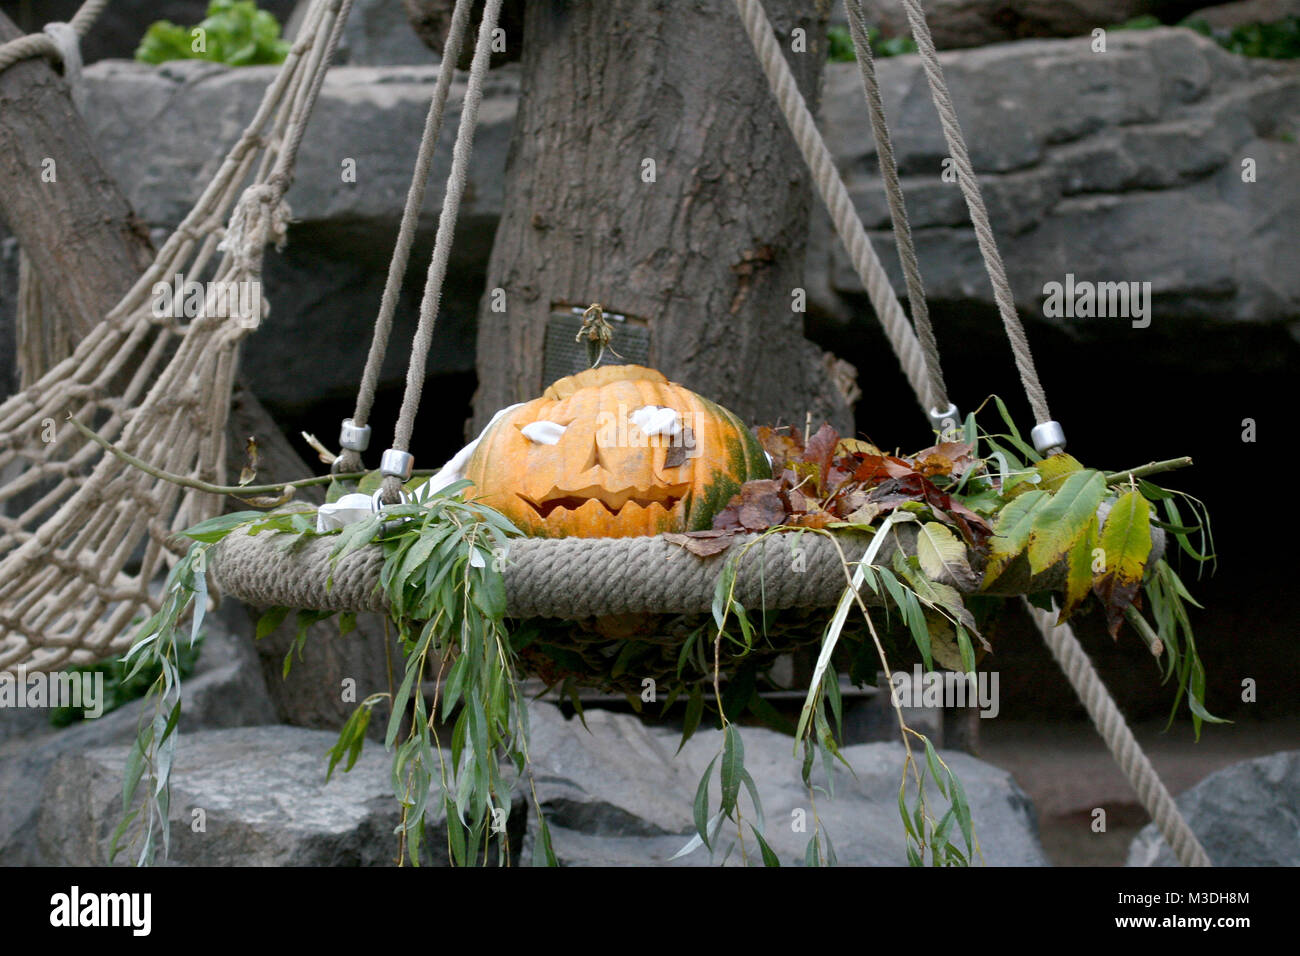 Halloween-Fruehstueck im Orang-Utan-Haus, Hambourg, Hagenbeck 07.12.2010 Banque D'Images